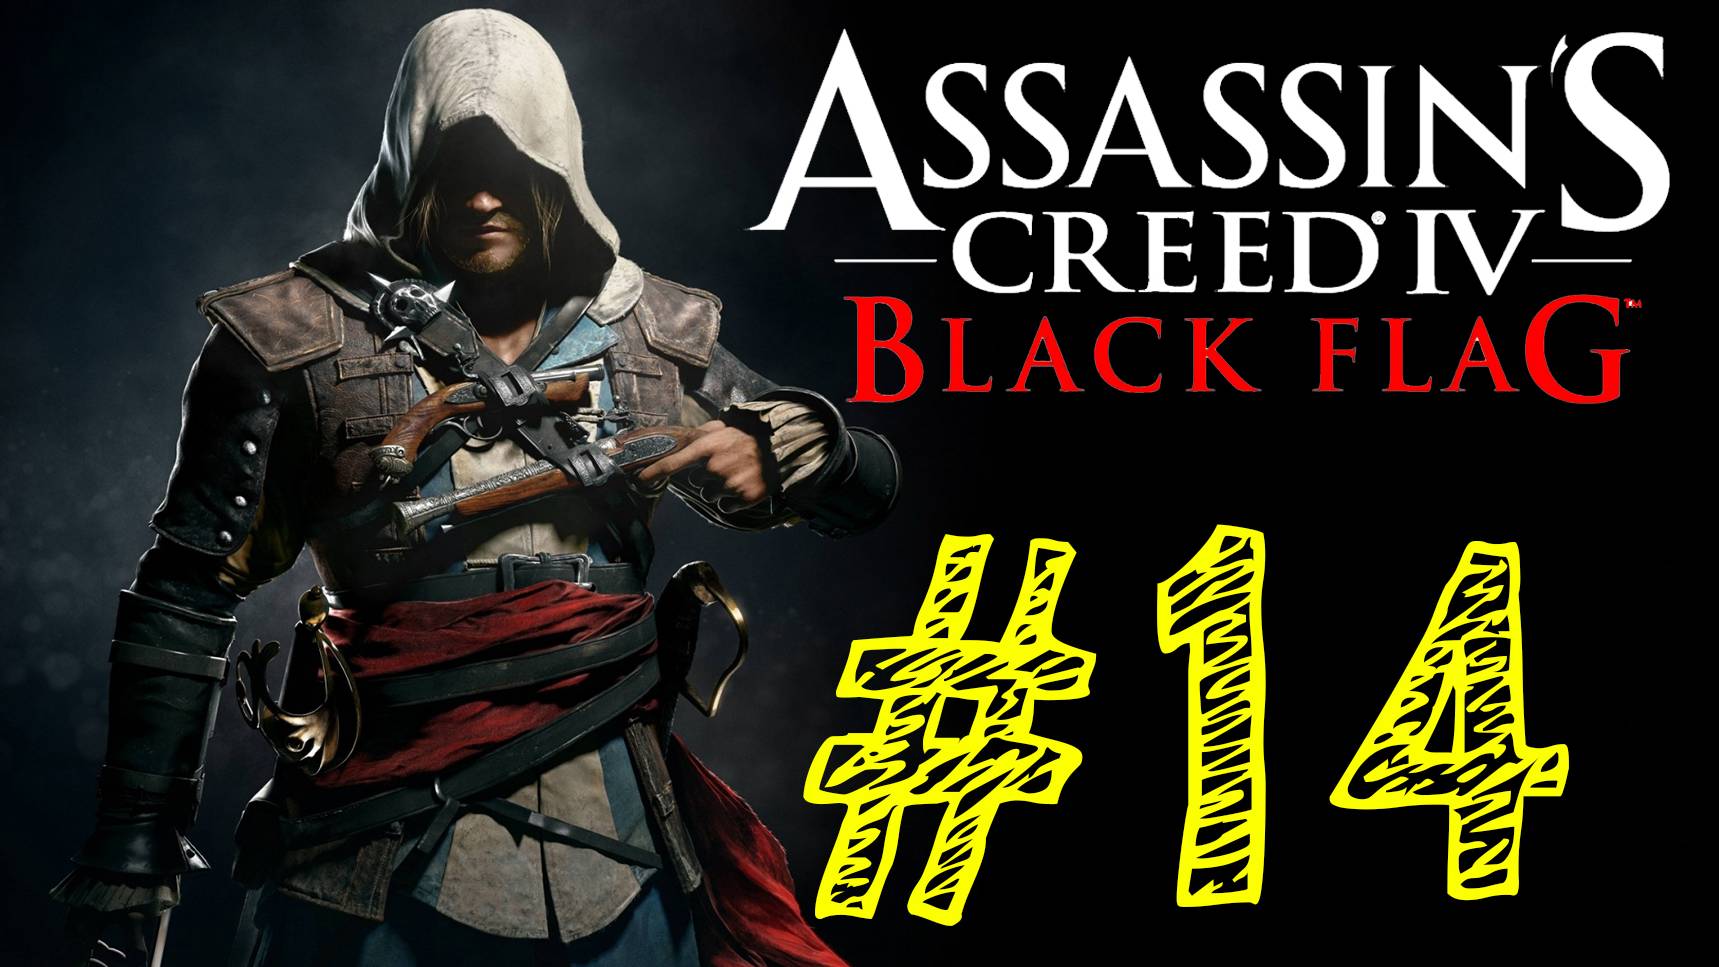 14 выпуск. ВЕК ПИРАТСТВА. Прохождение компании. Assassins Creed IV Black Flag. Ассасин черный флаг